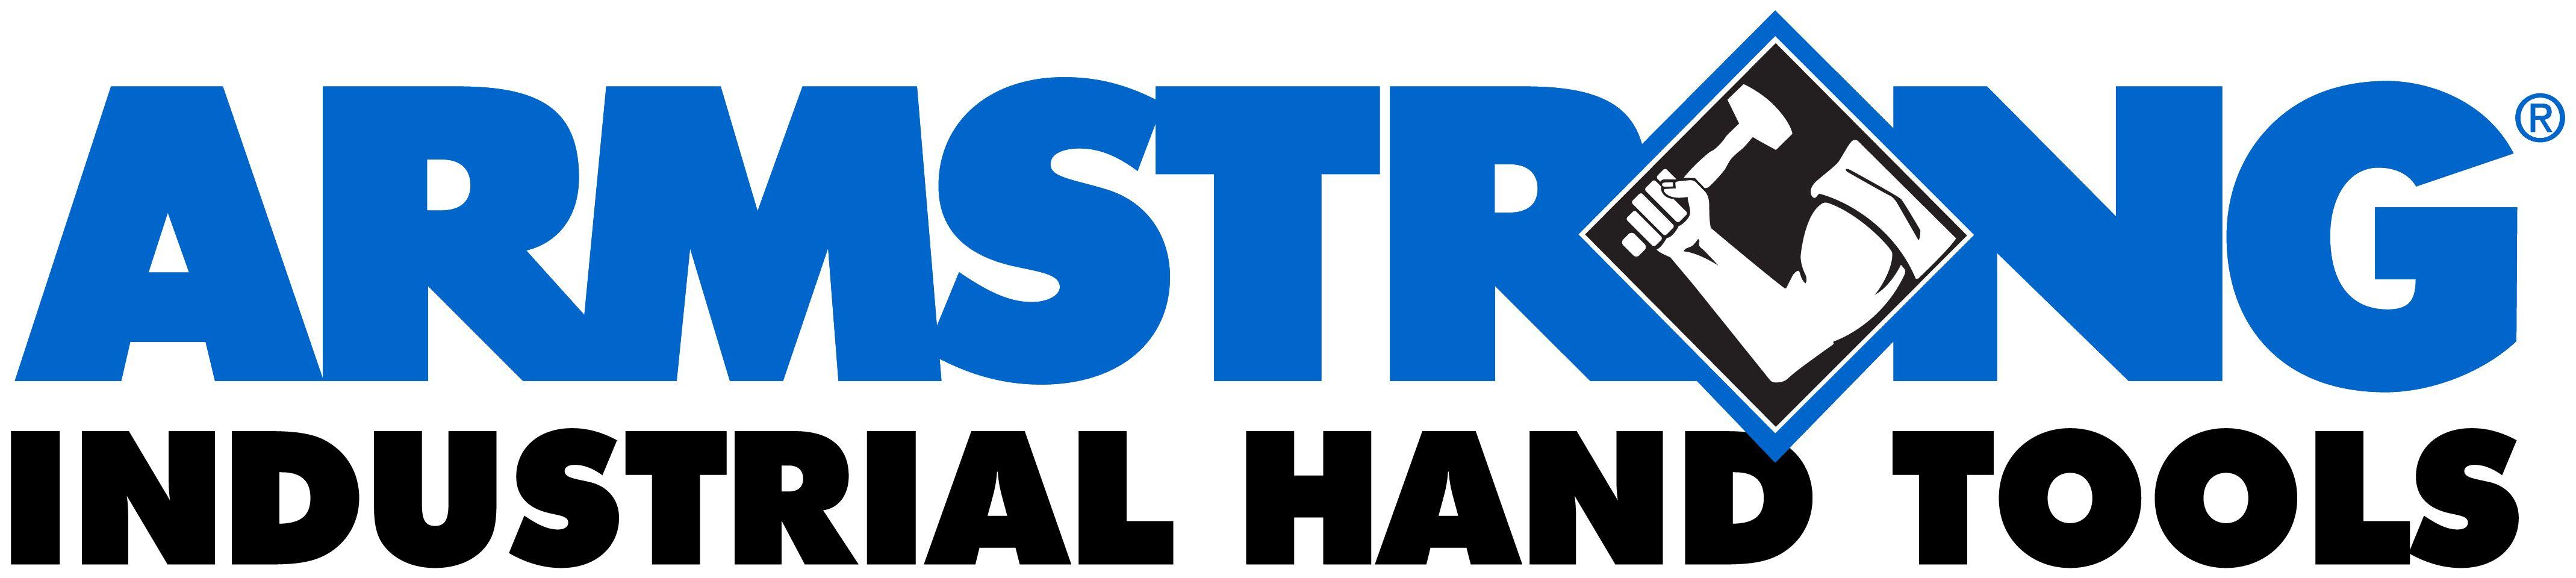 Armstrong Logo - LogoDix